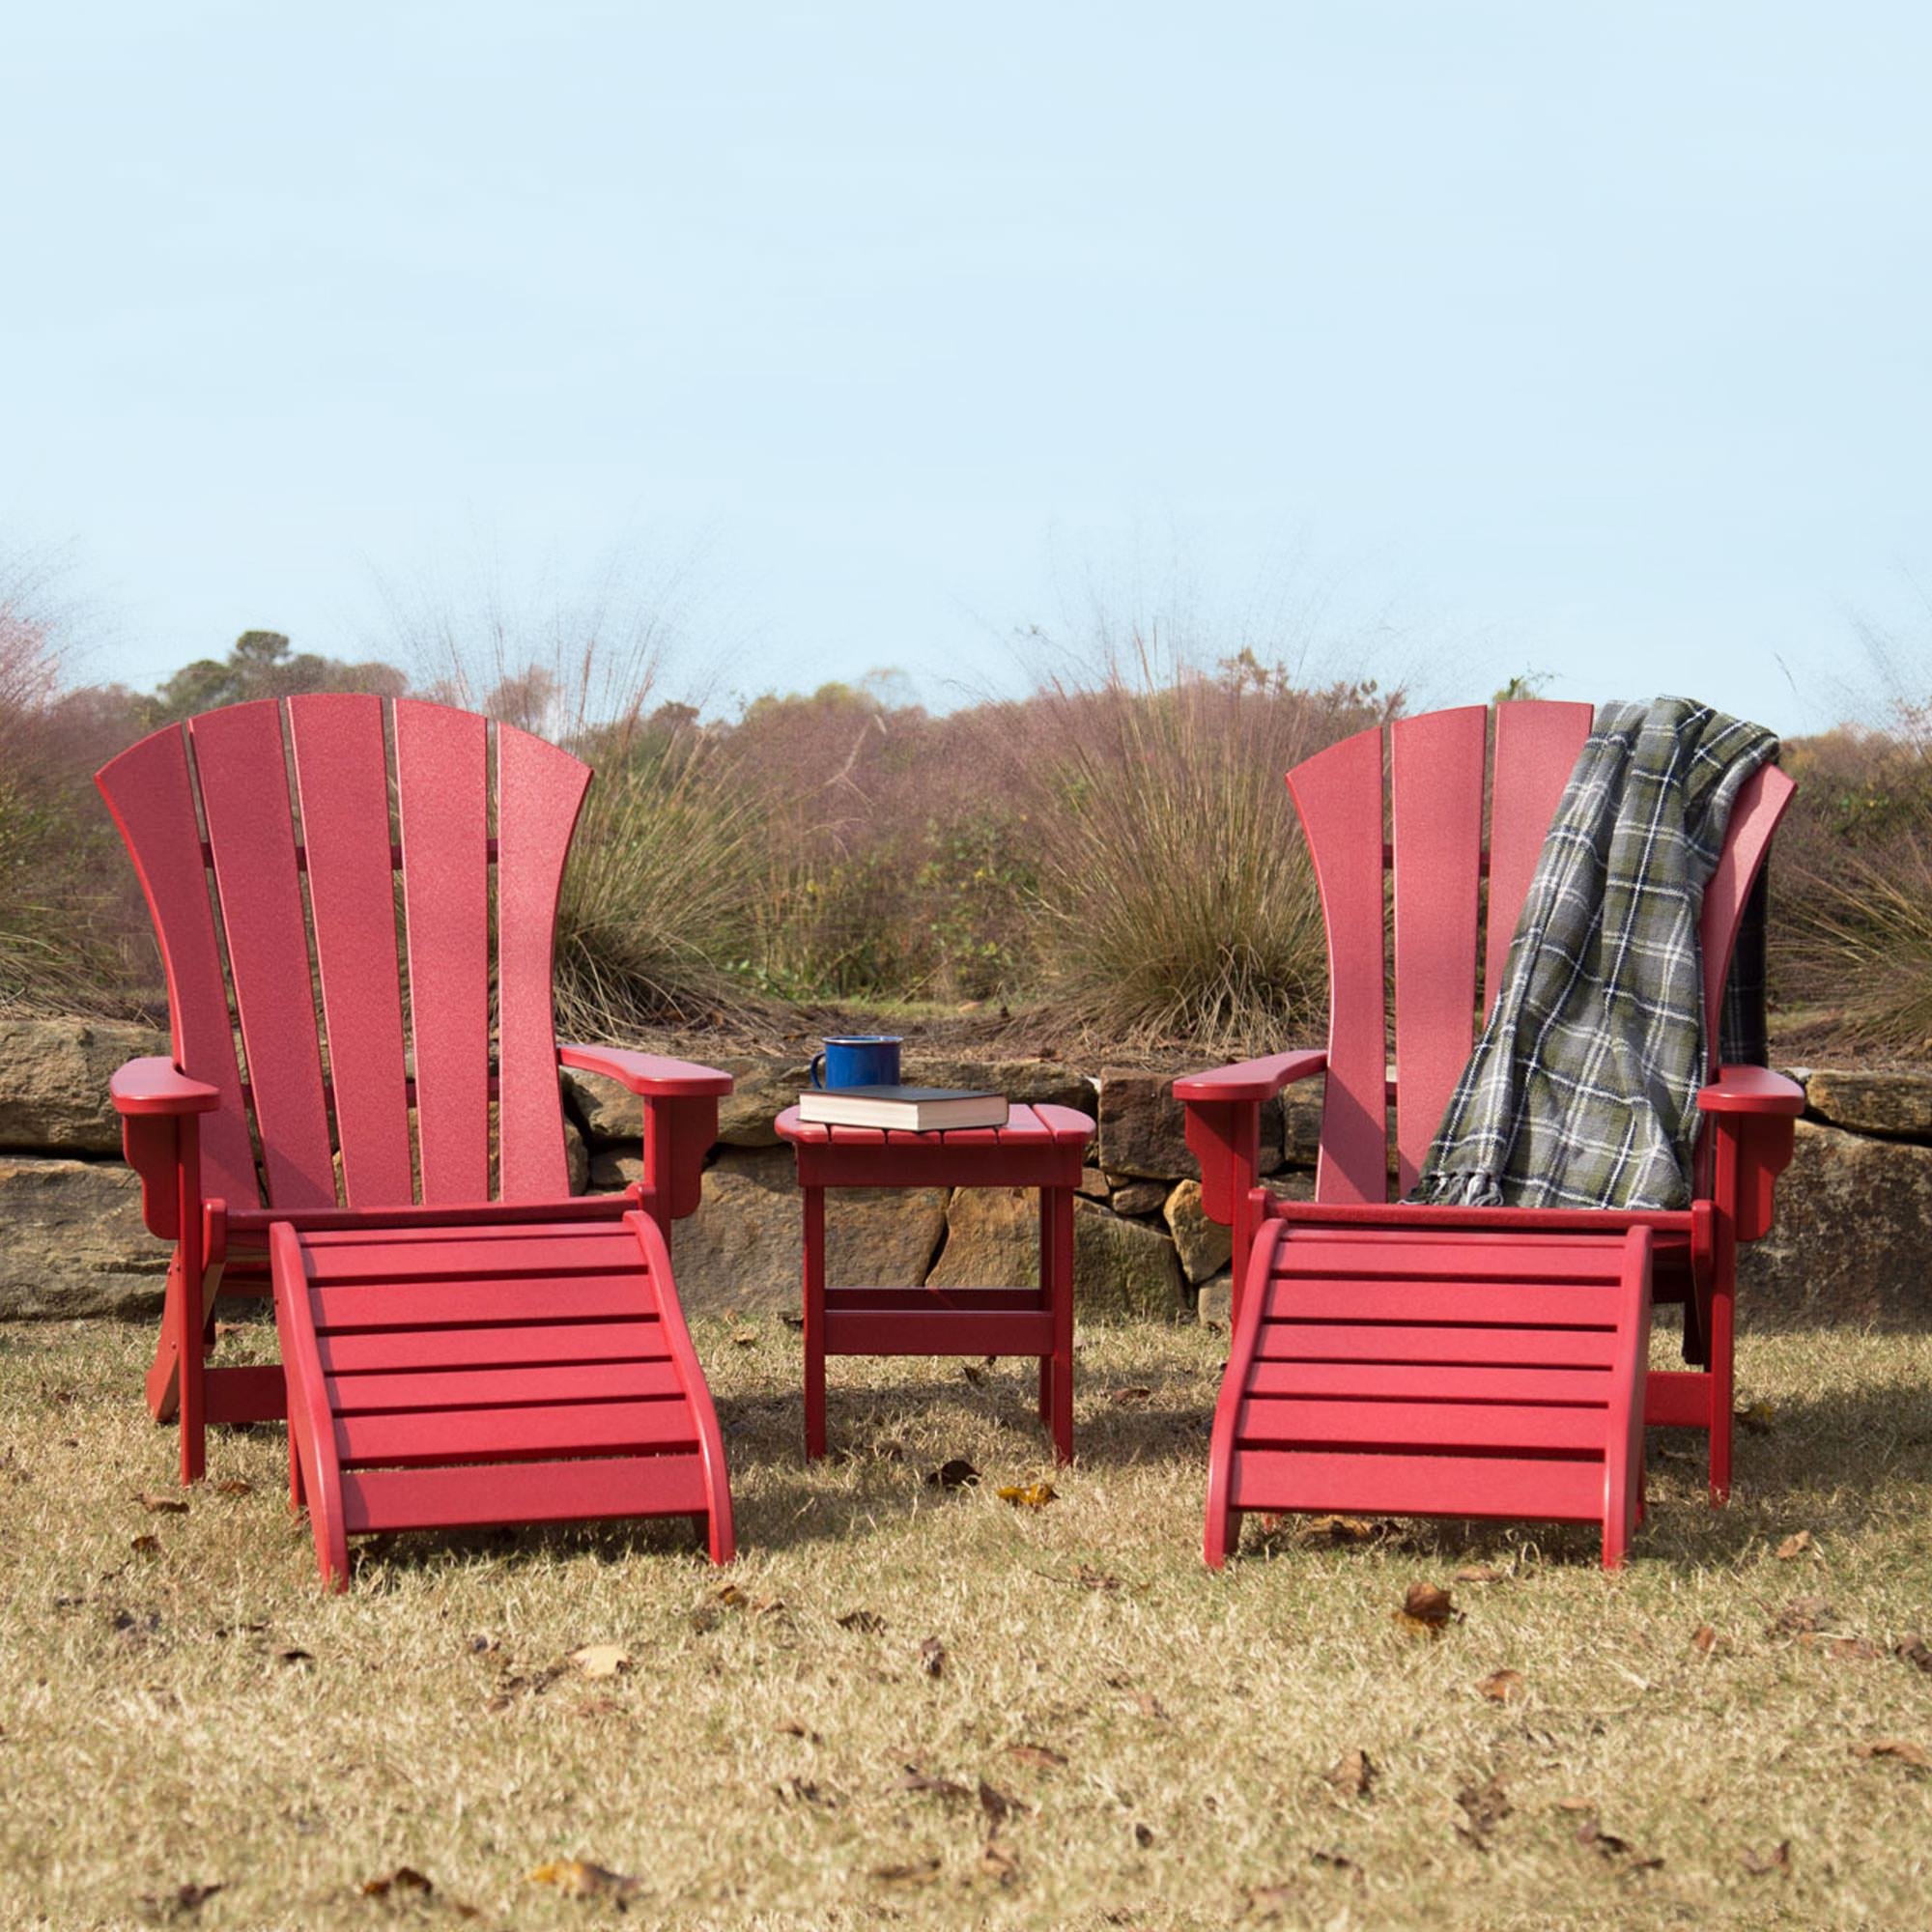 Durawood Red Adirondack Chair.jpg